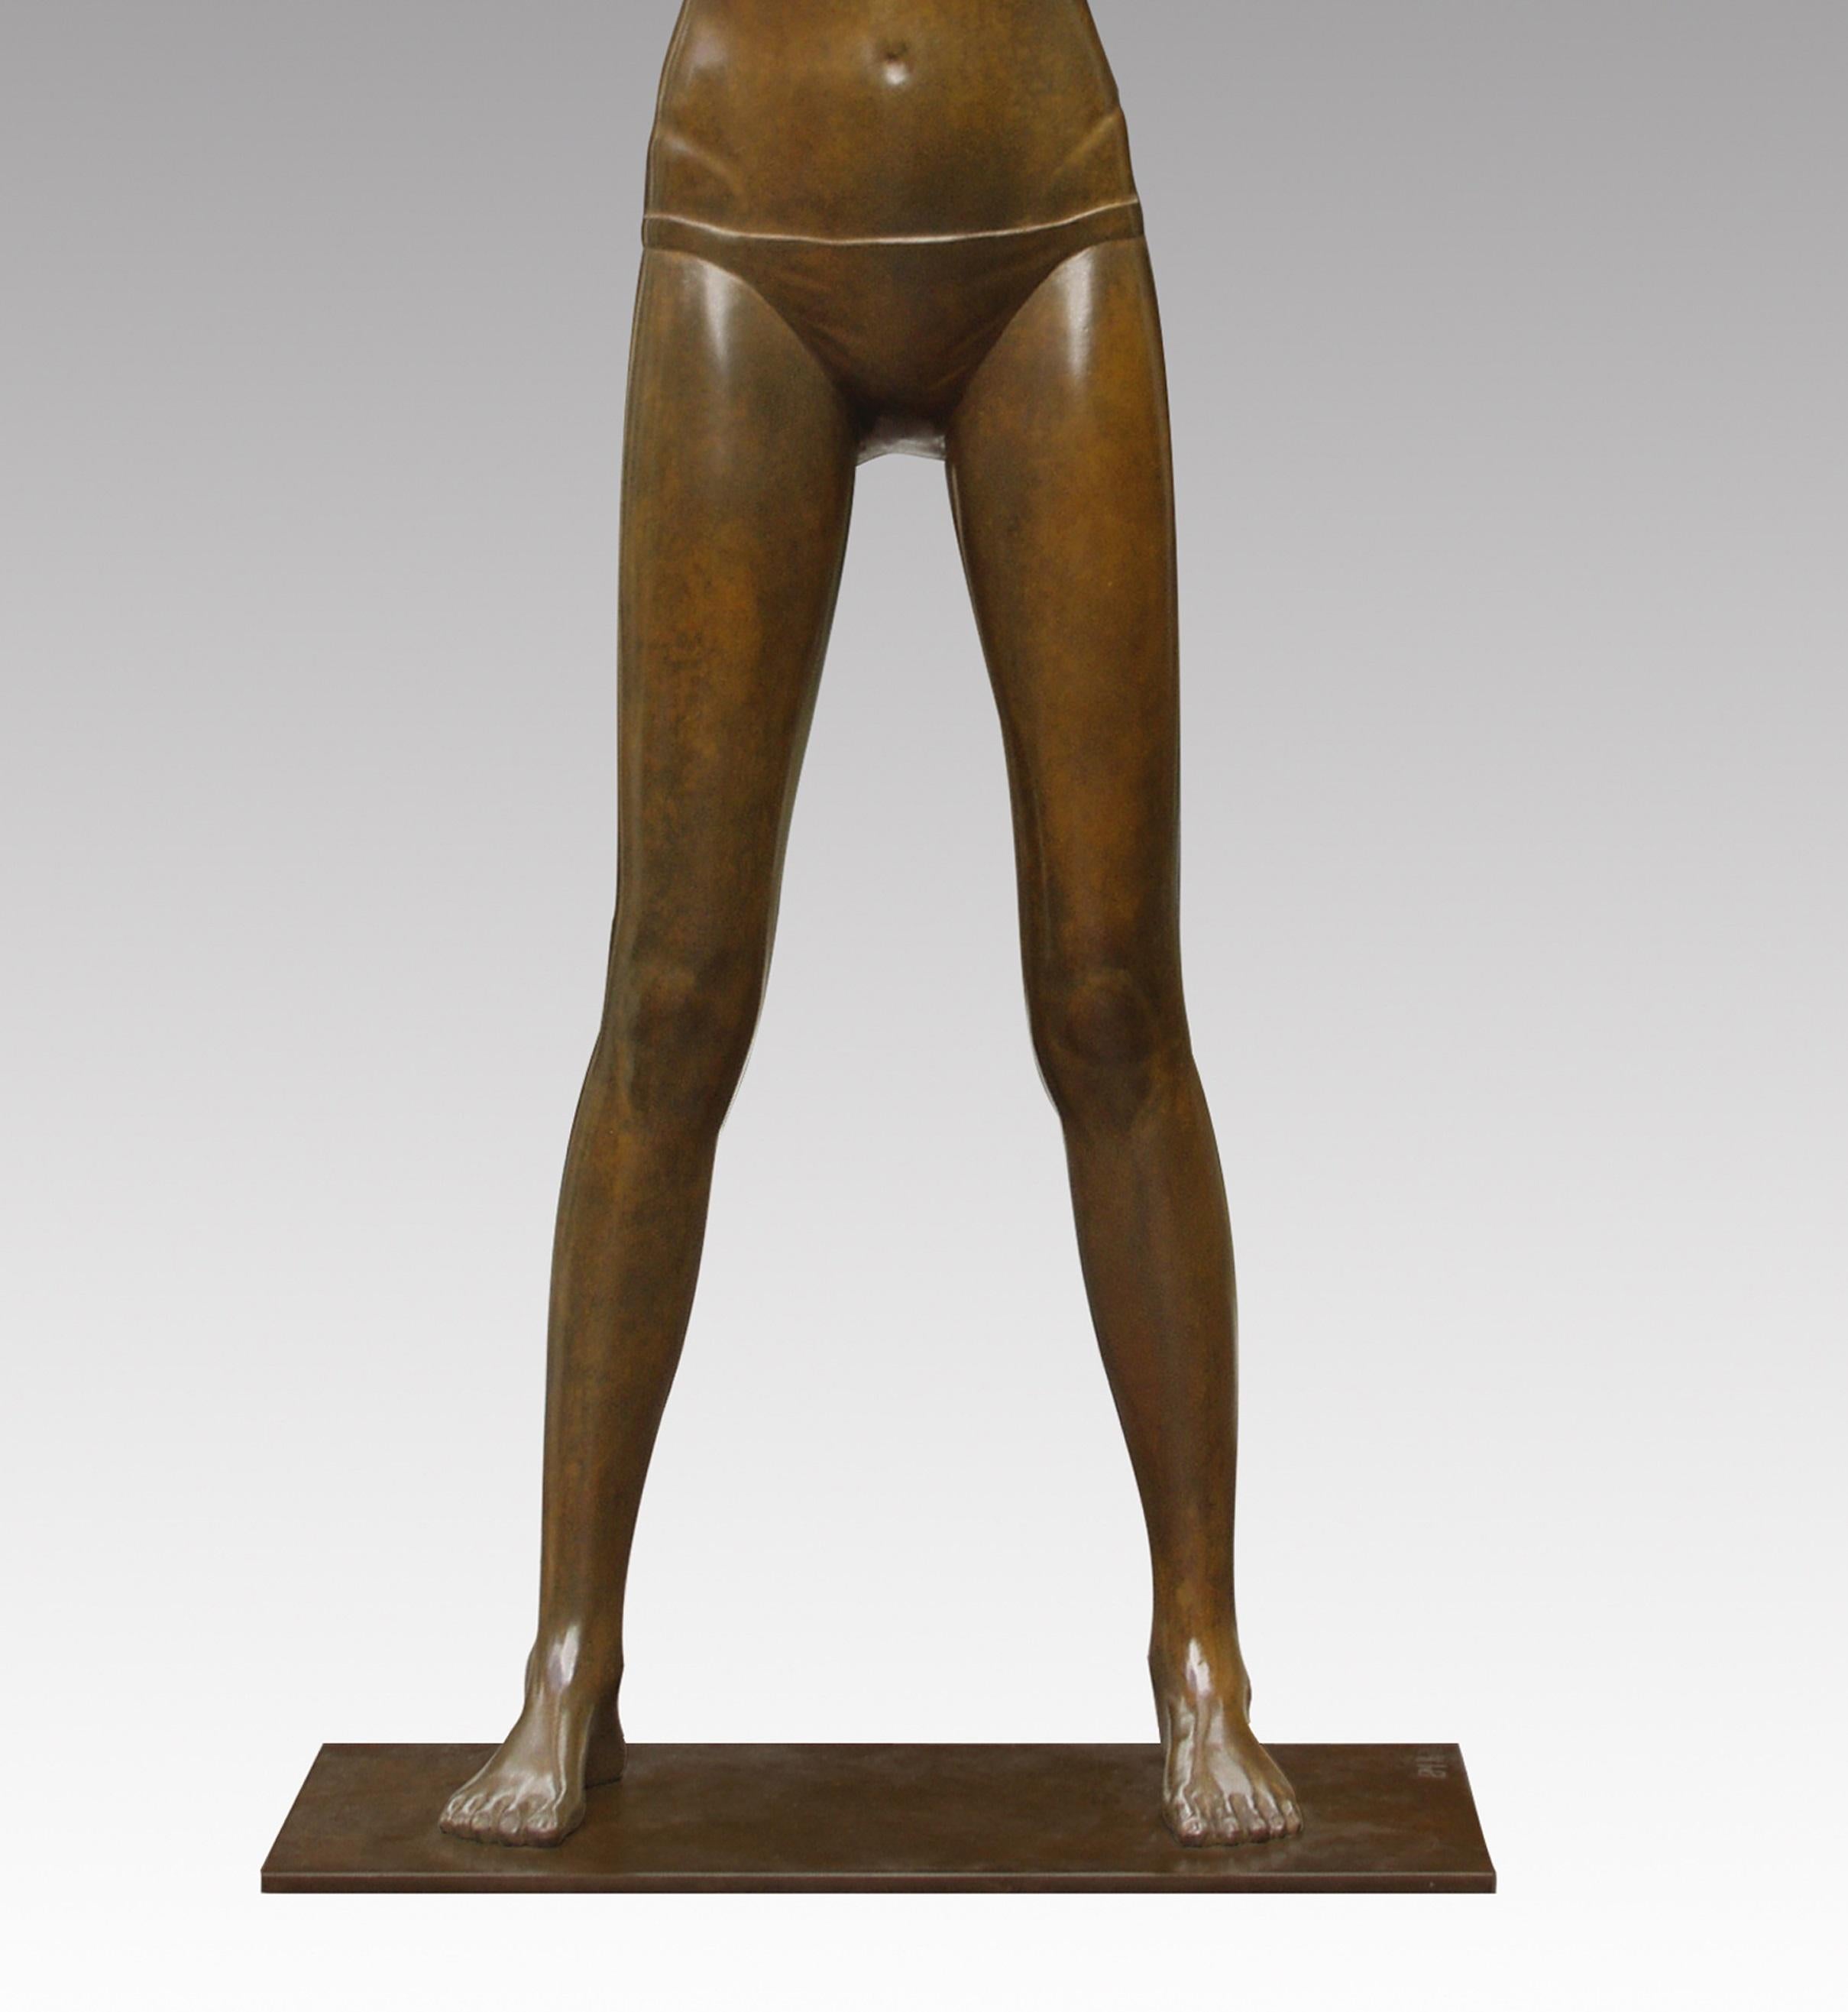 Modèle II Sculpture en bronze Fille nue debout Figure féminine contemporaine
Les statues d'Erwin Meijer sont subtiles avec une écriture reconnaissable et personnelle.
Ils respirent l'atmosphère d'un poème narratif, où le lecteur ne rencontre pas